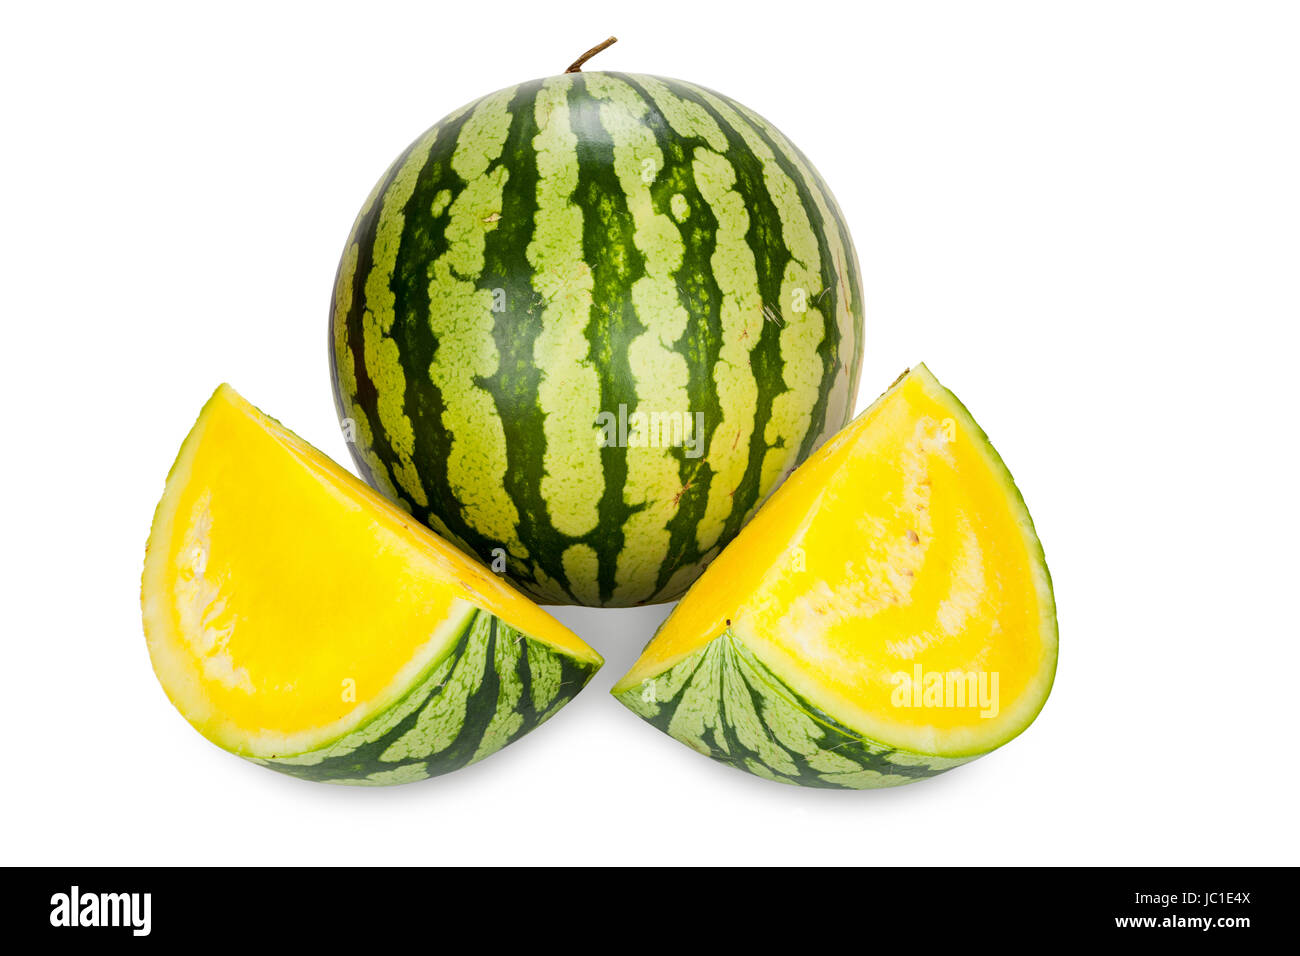 Wassermelone mit gelben Fruchtfleisch isoliert vor weißem Hintergrund Stock Photo